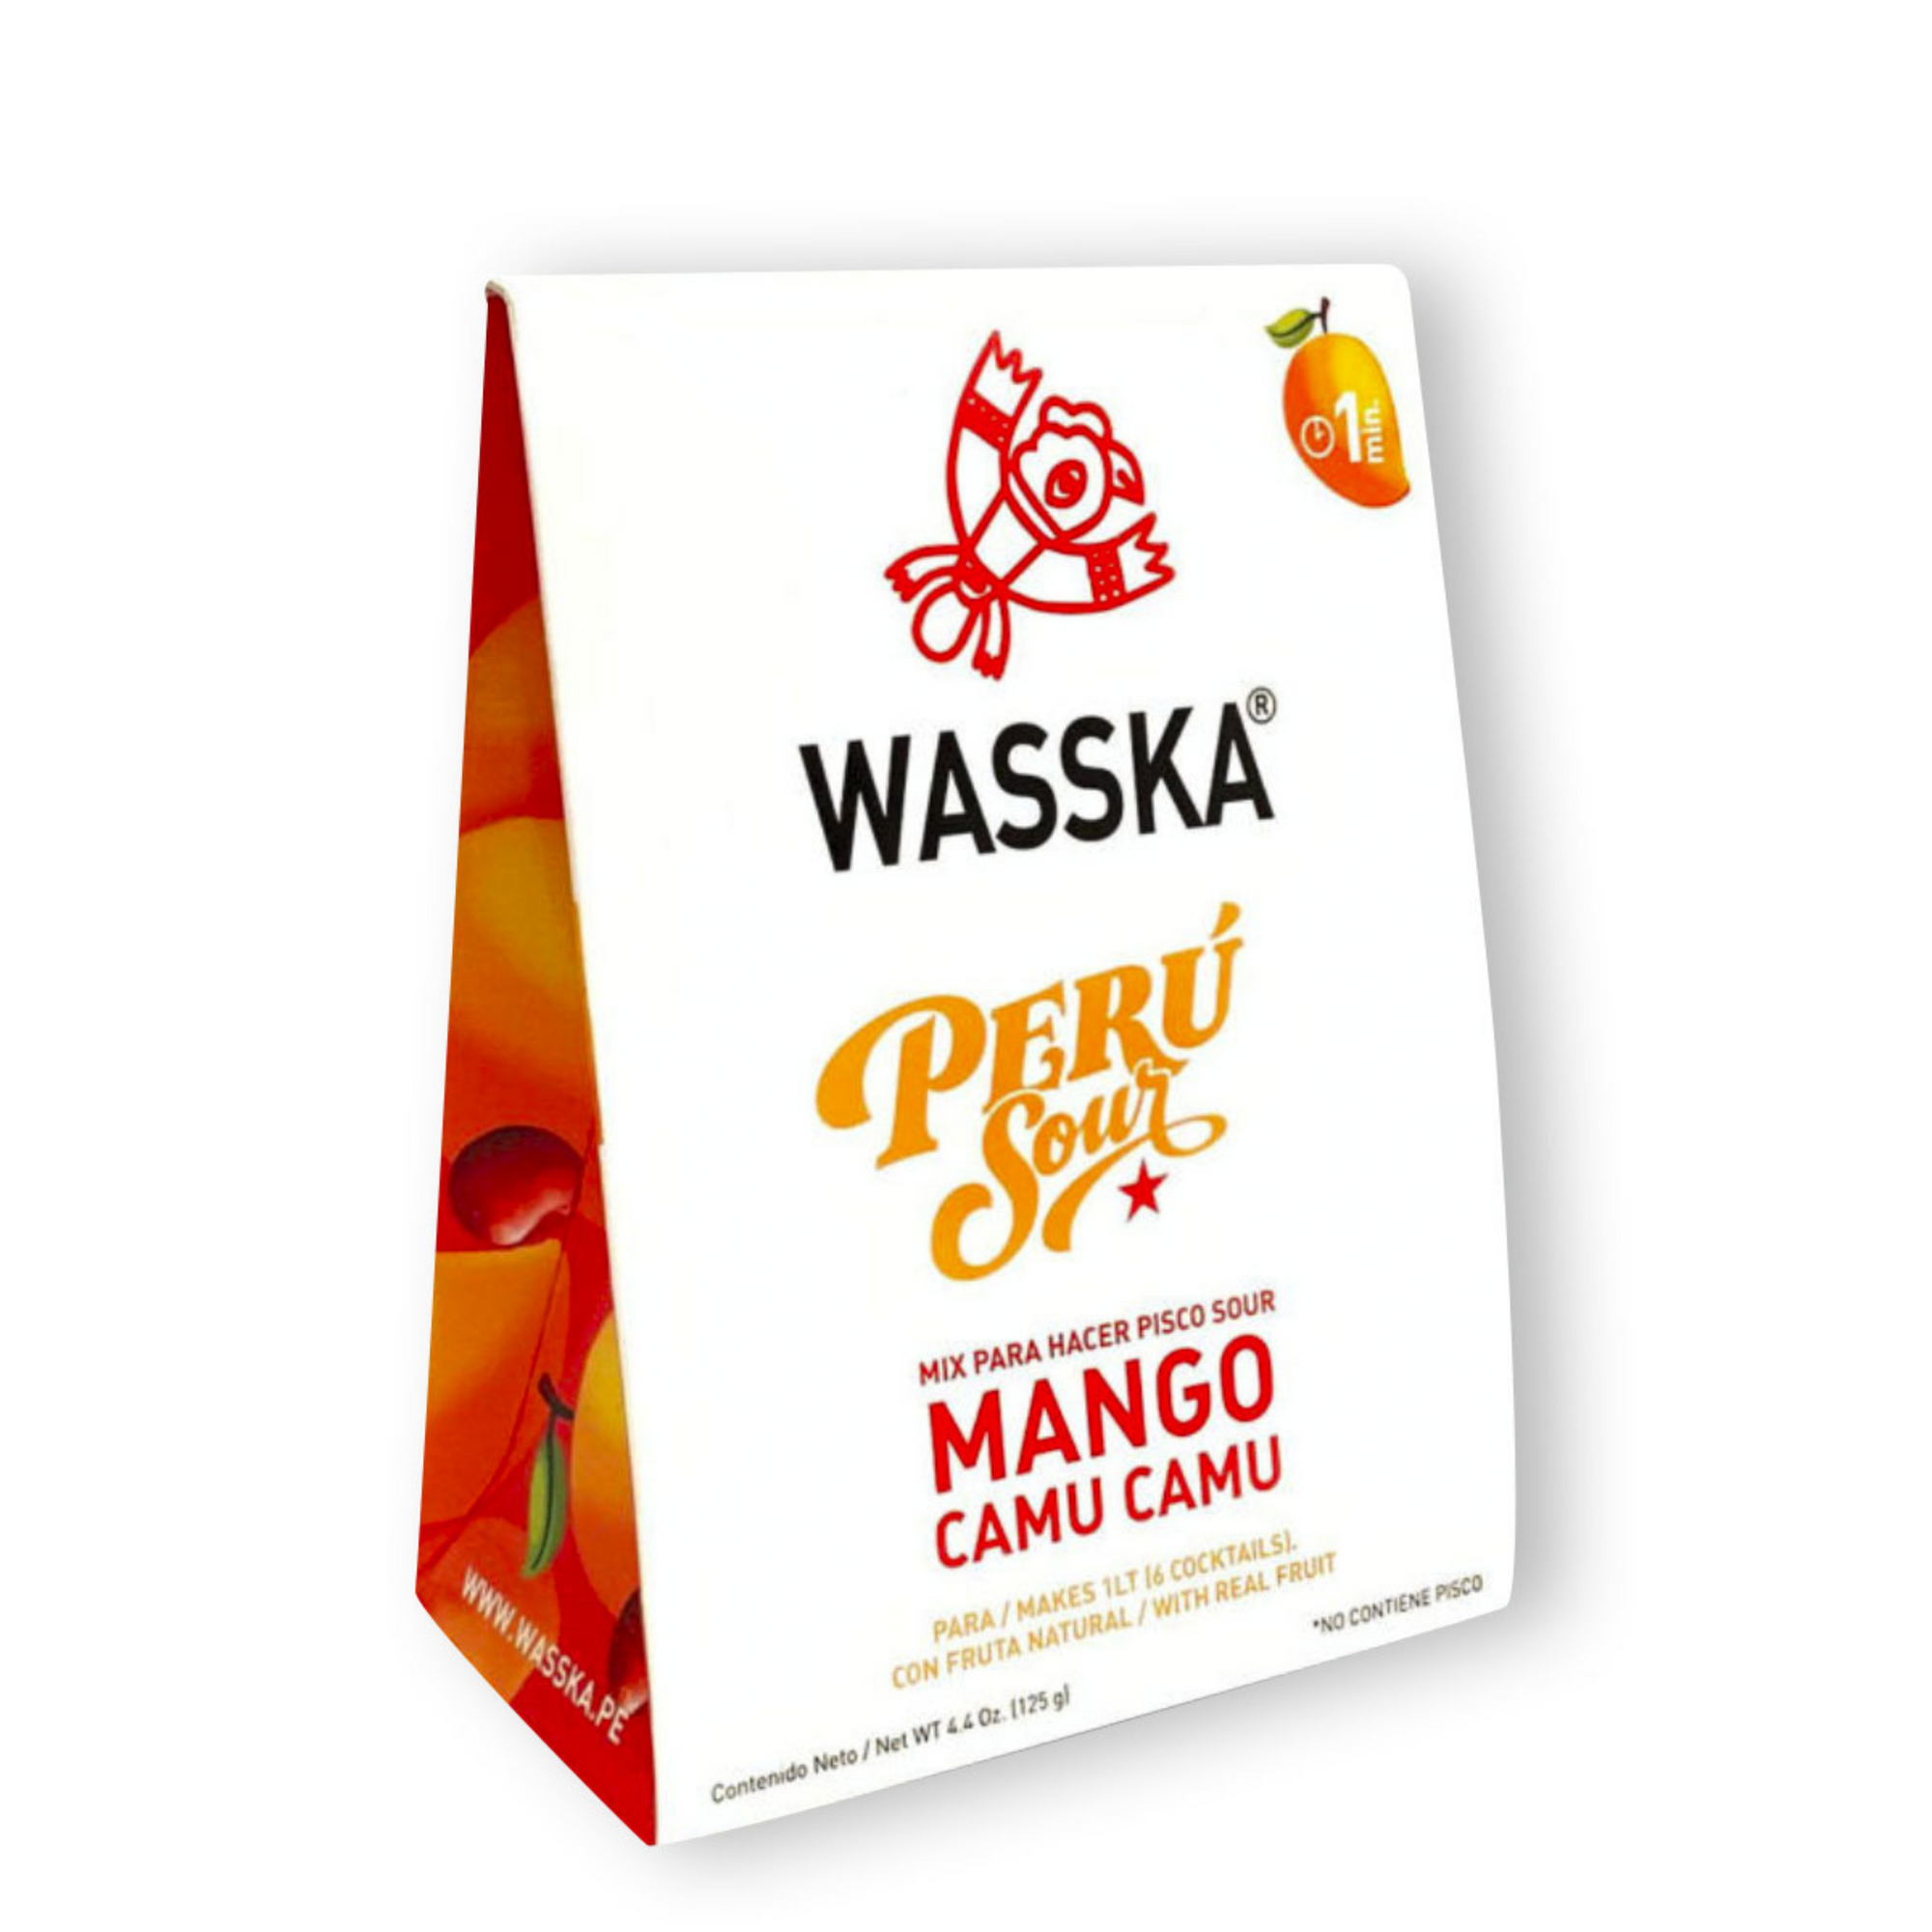 Wasska Peru Pisco Sour Mix Mango Camu Camu x 4.4 oz.